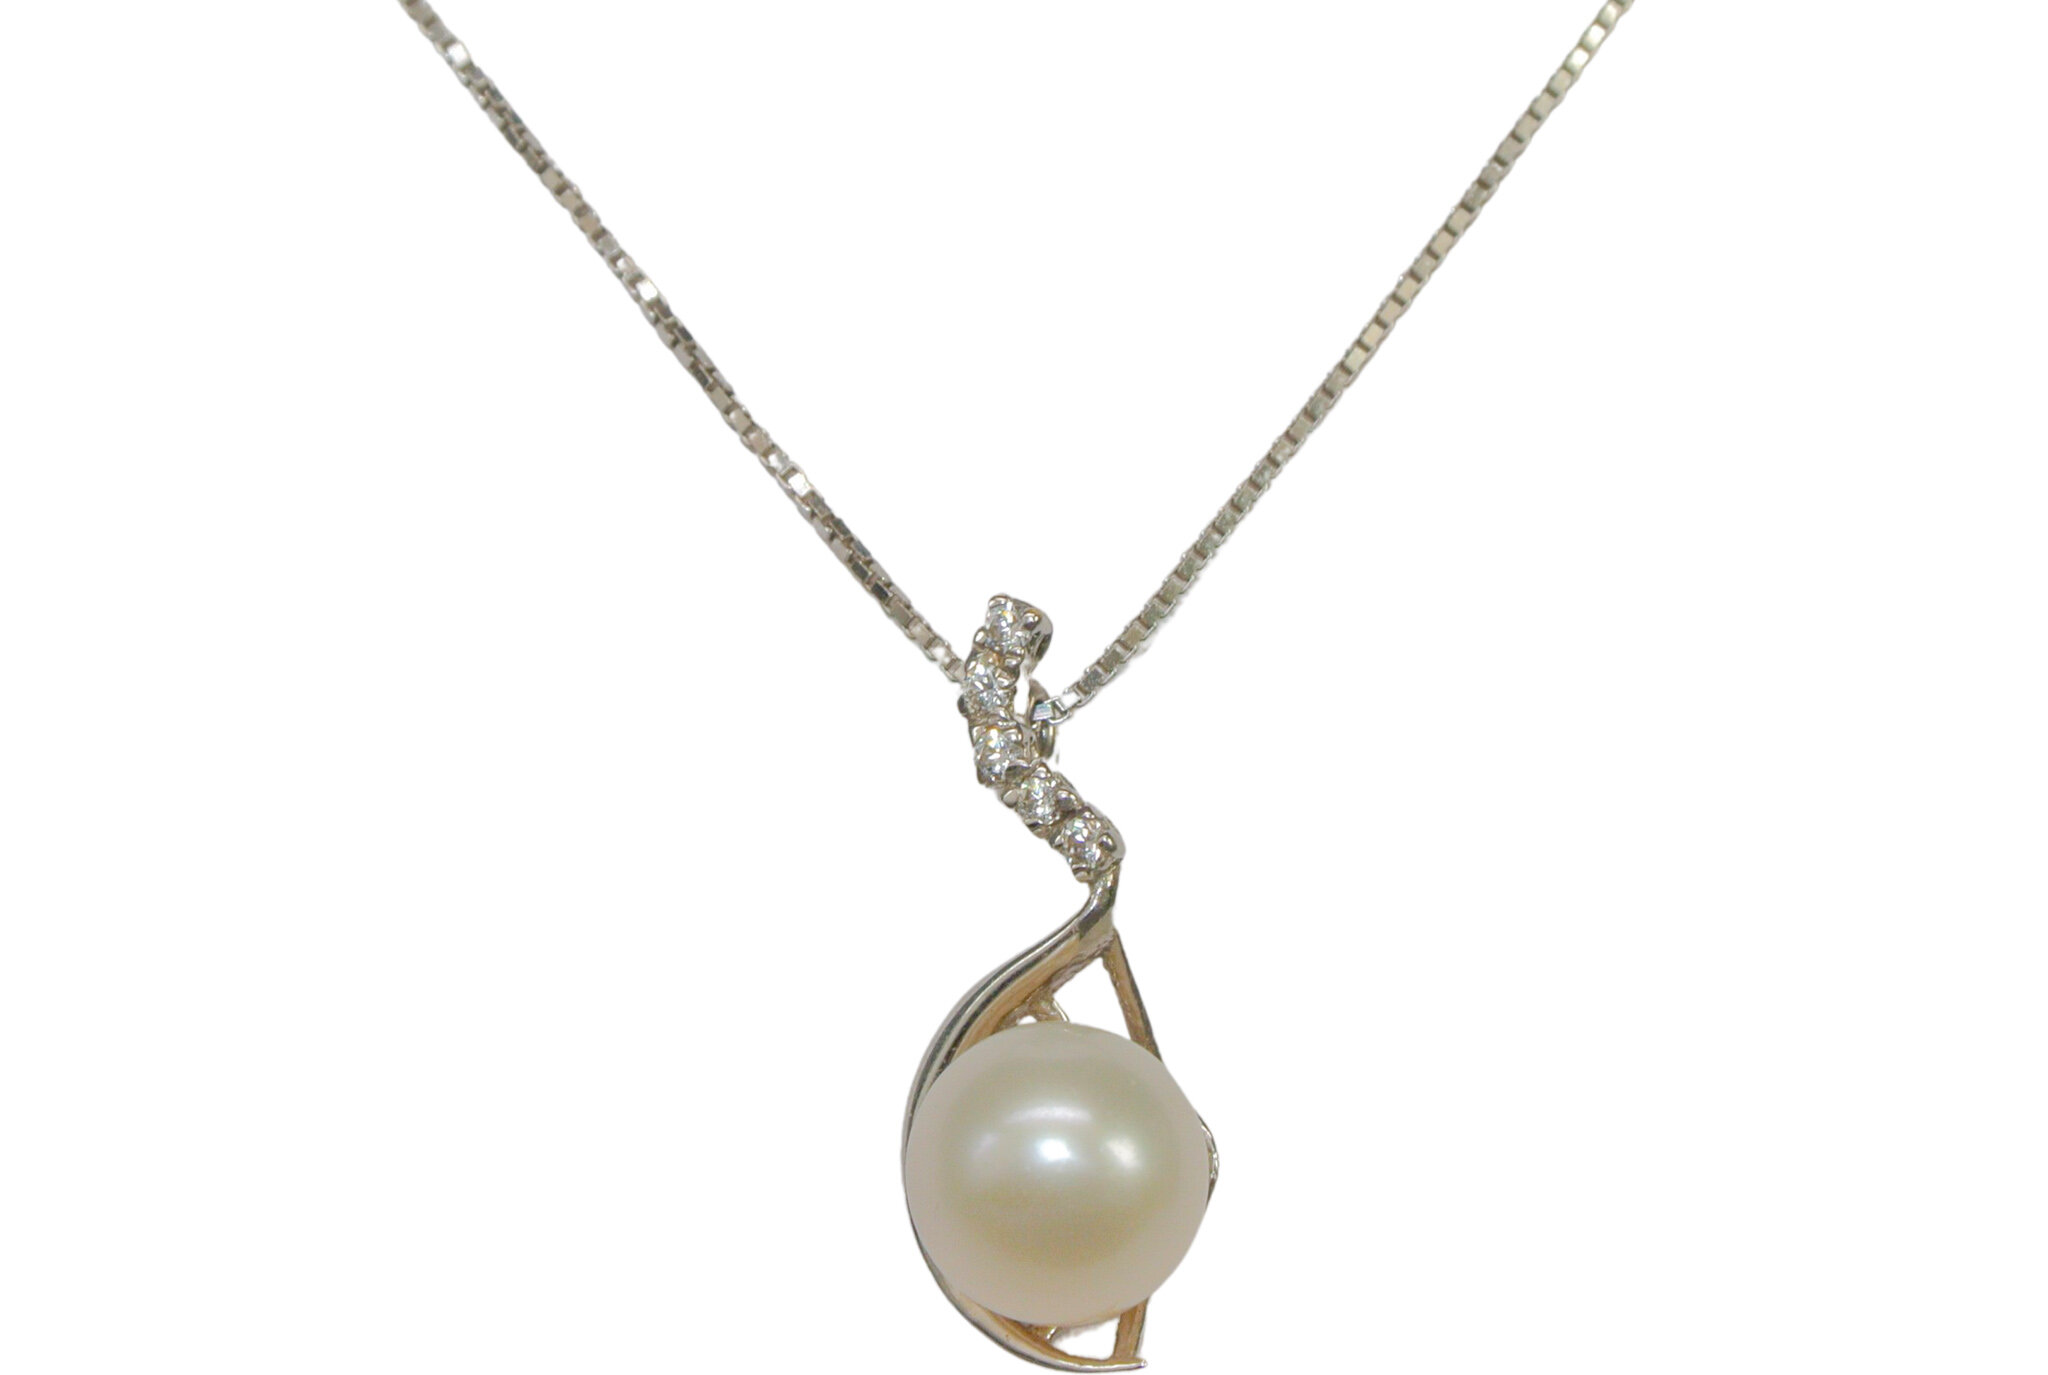 Halskette aus Weißgold mit Zirkonen und einer Perle